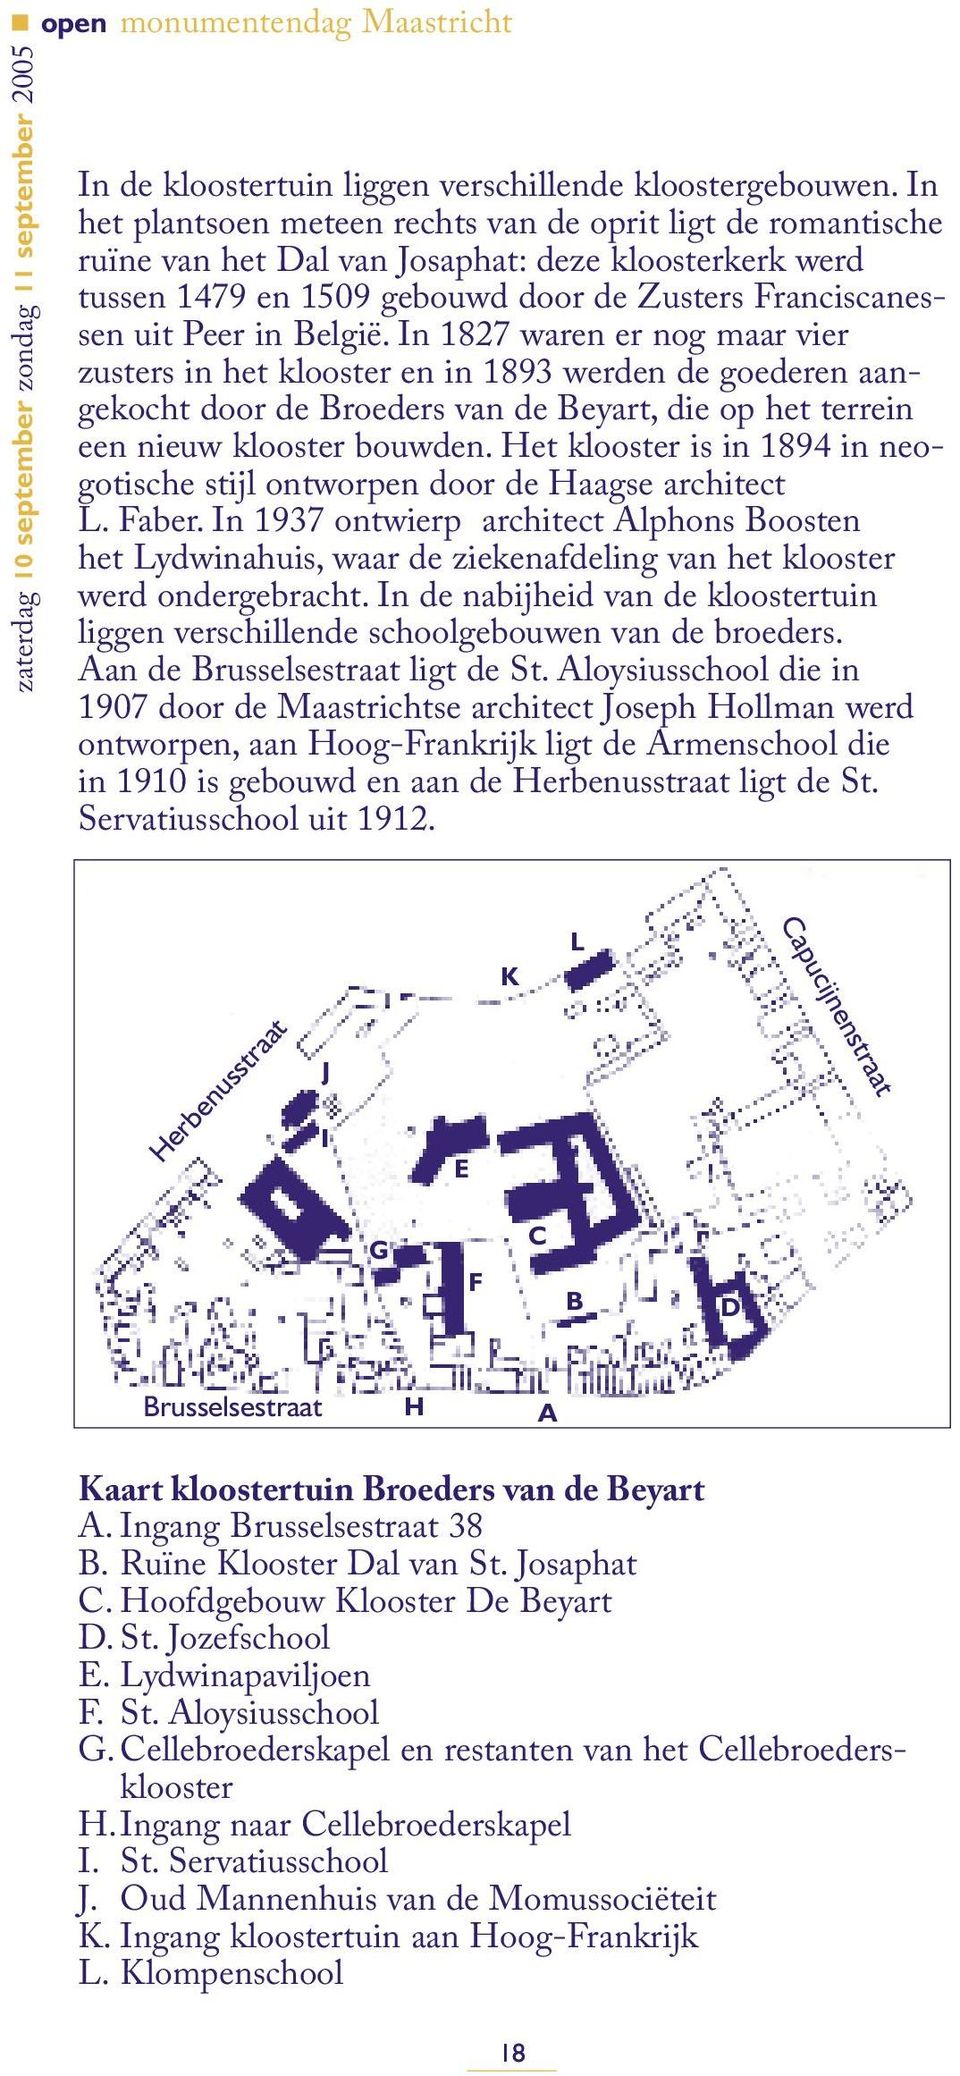 In 1827 waren er nog maar vier zusters in het klooster en in 1893 werden de goederen aangekocht door de Broeders van de Beyart, die op het terrein een nieuw klooster bouwden.